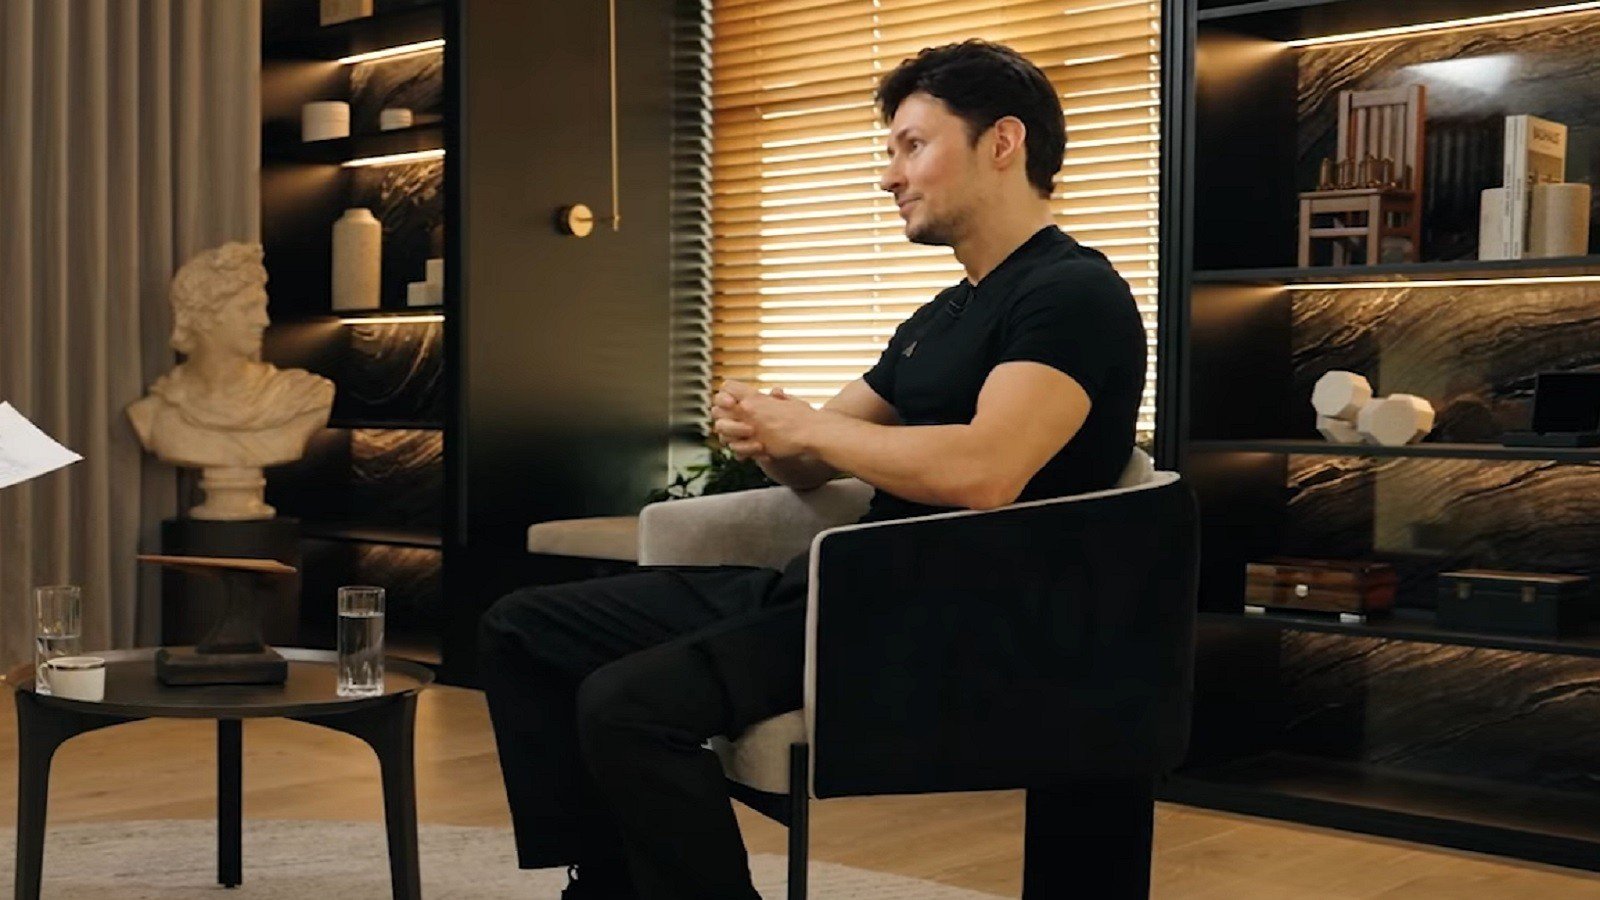 В интервью Павла Дурова заметили два стула на одном из них пики точеные